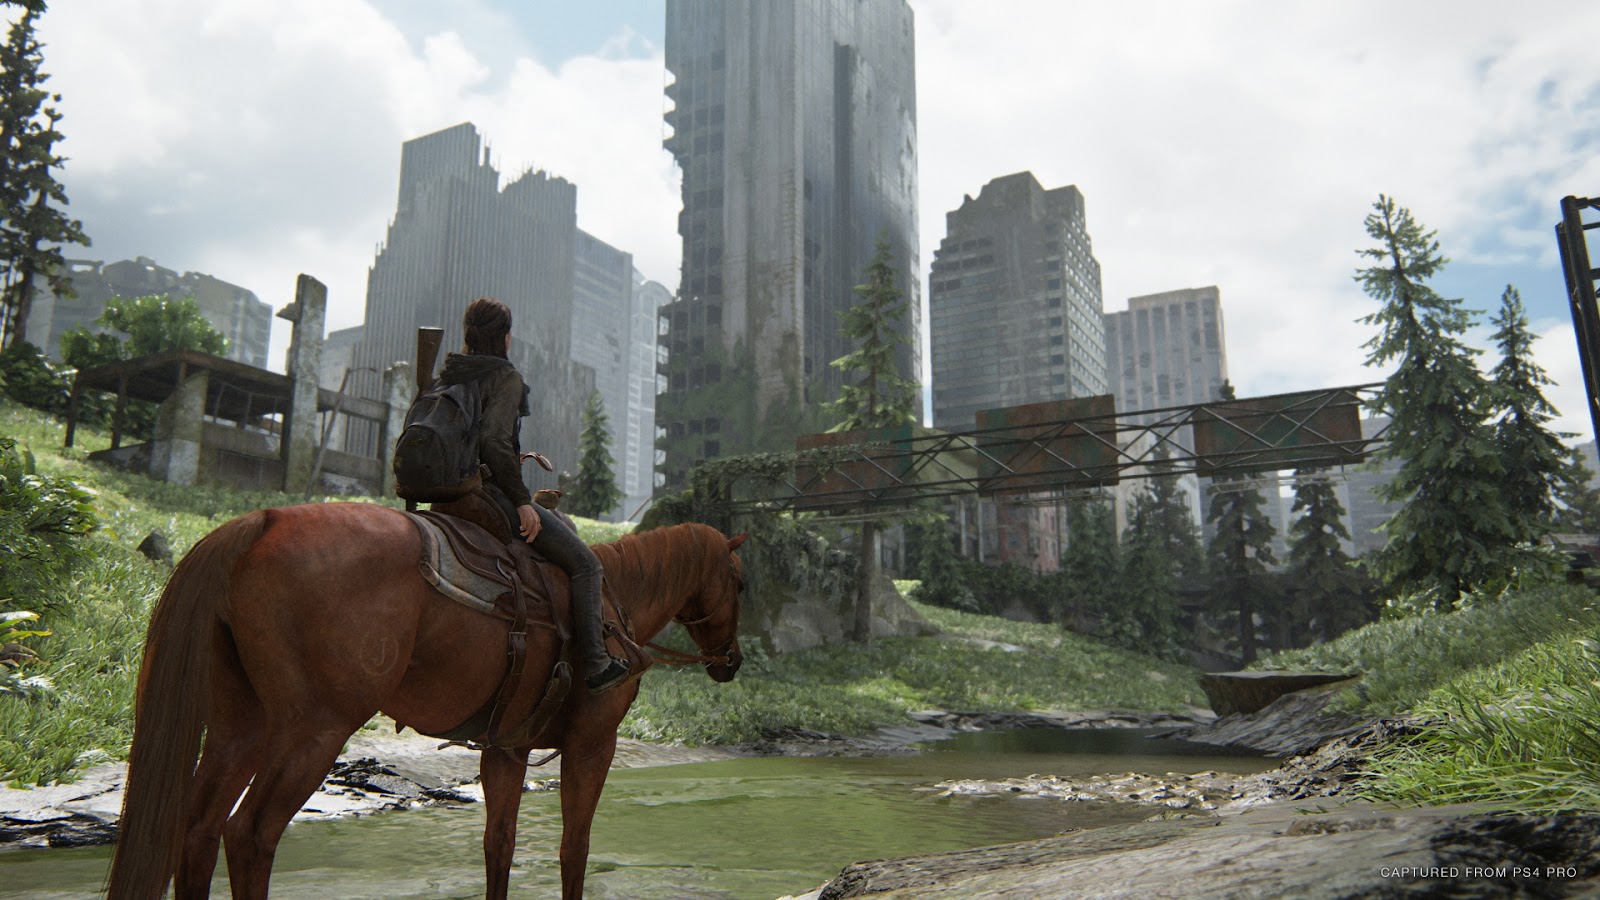 Análise: The Last of Us Part II (PS4) é uma história brutal sobre ódio e vingança